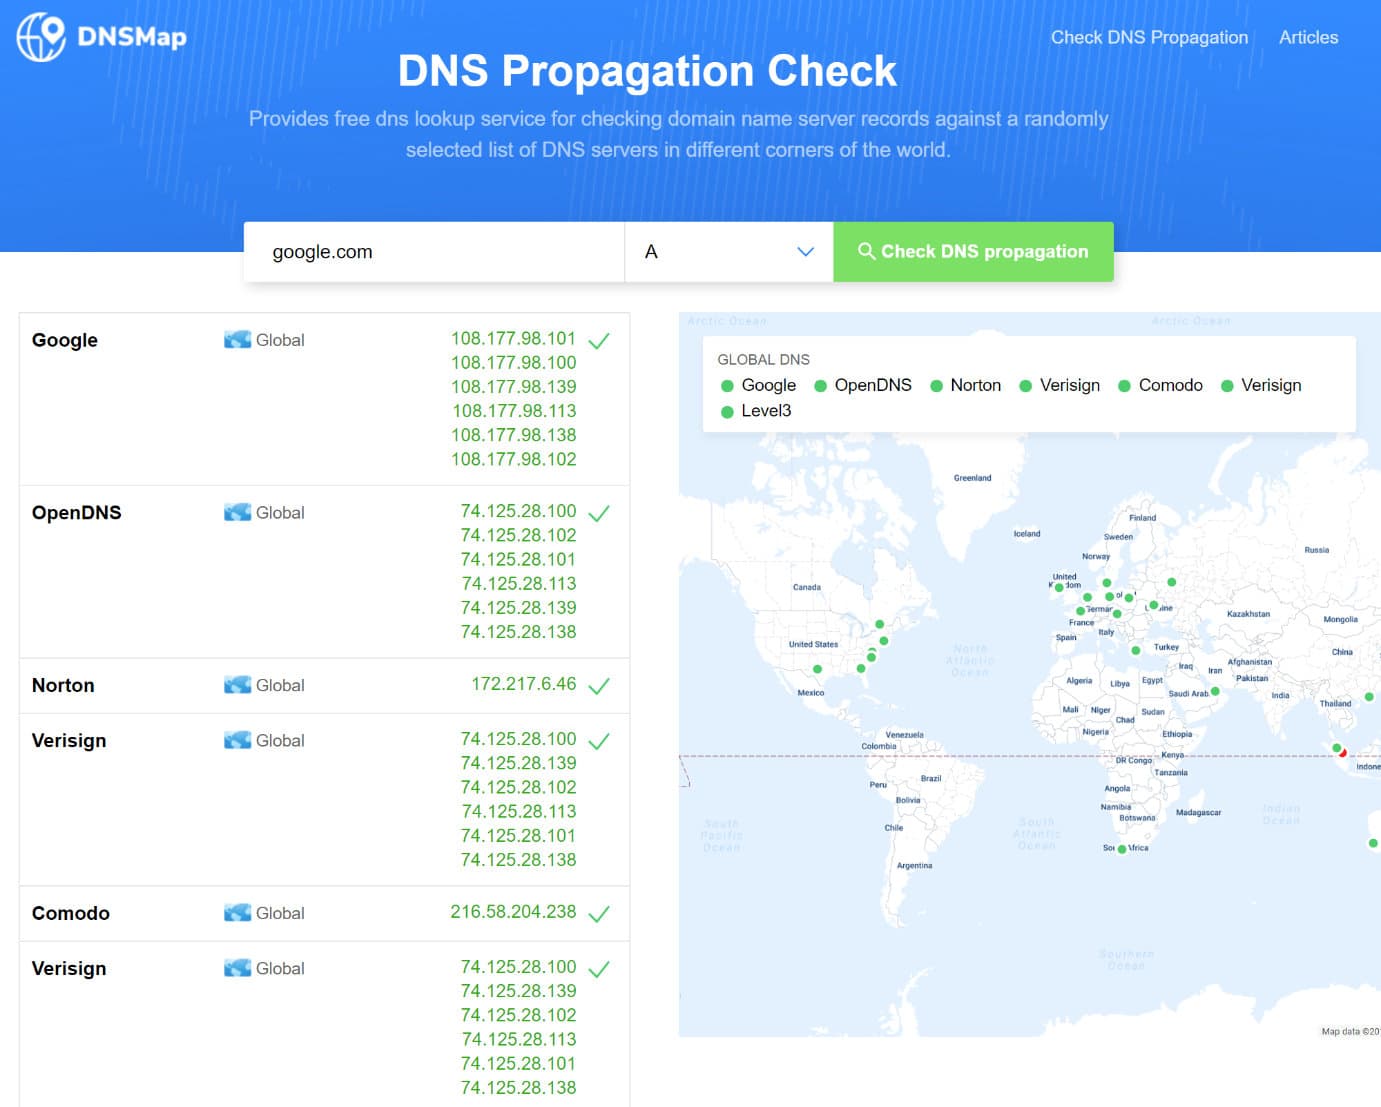 Verificar a propagação do DNS